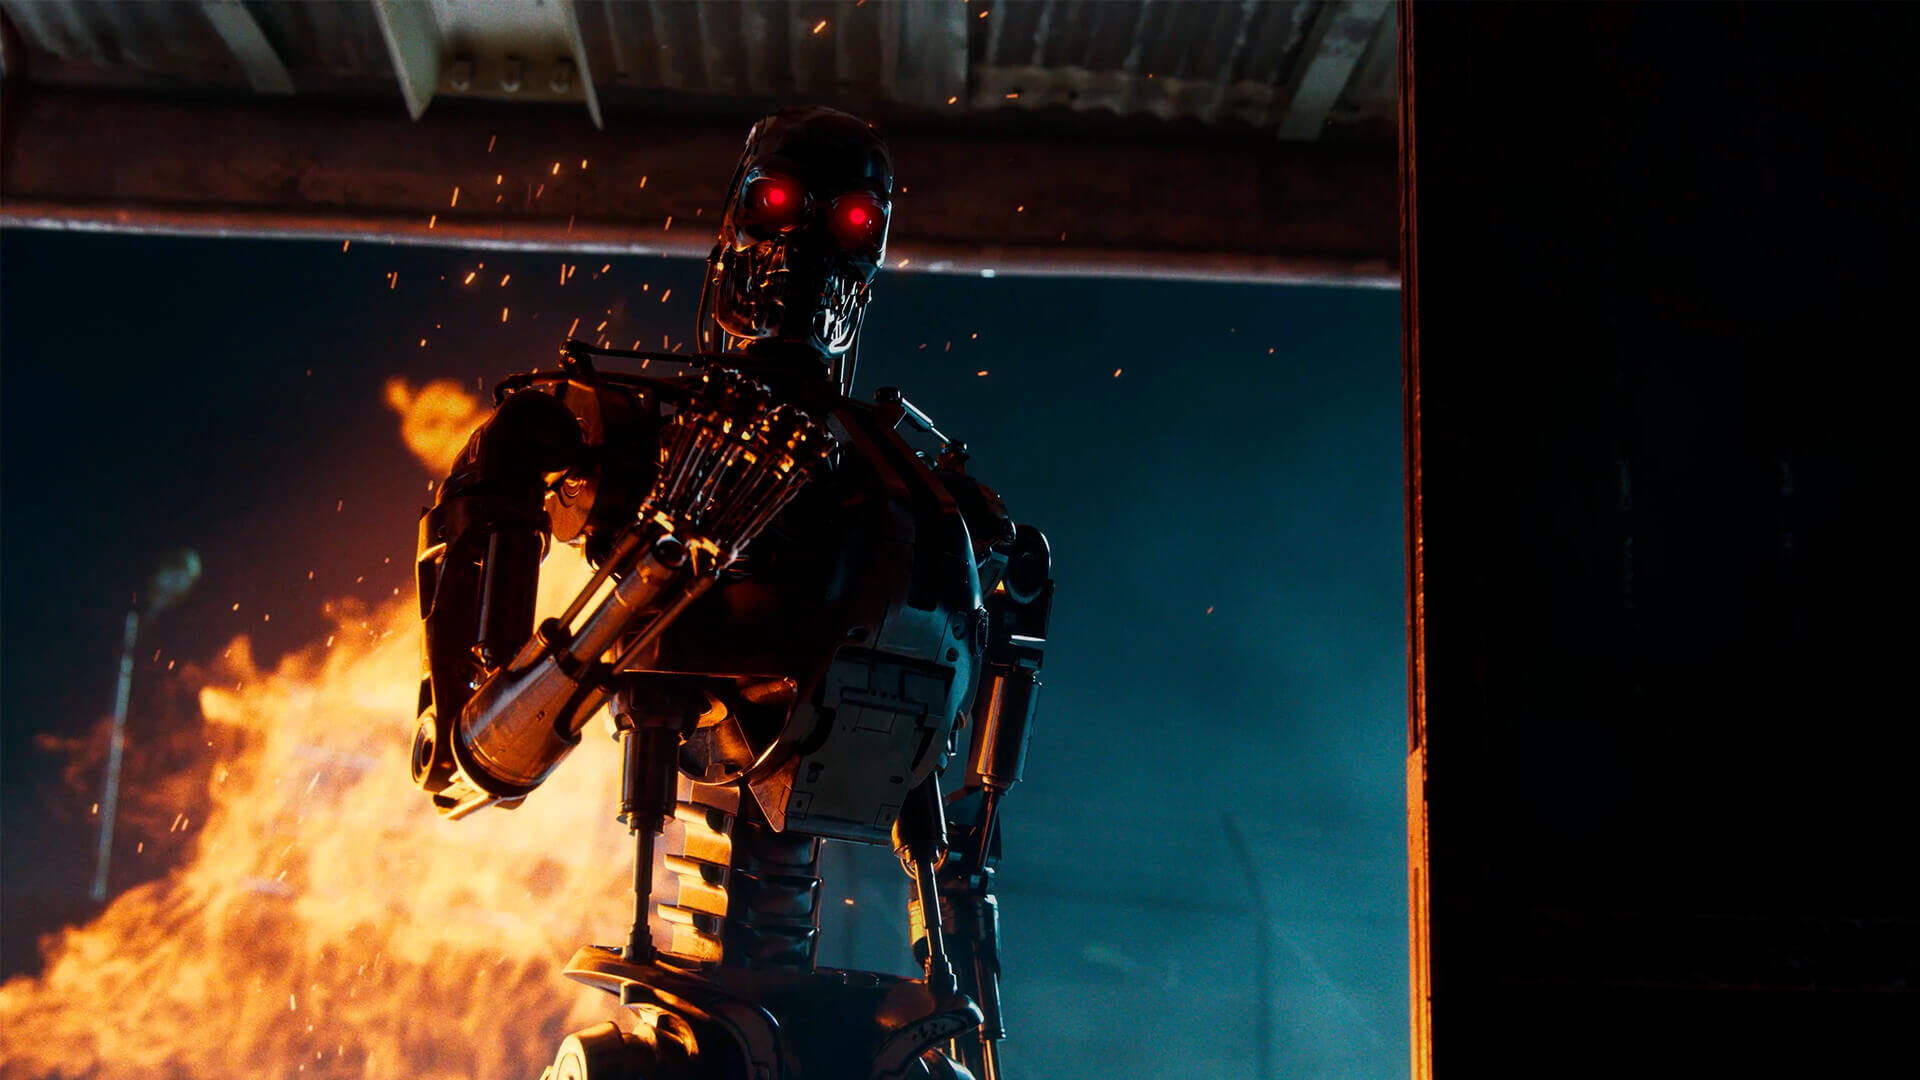 Terminator: Survivors создан на базе Unreal Engine 5, предназначен только для PvE, в него можно будет играть в автономном режиме, будет иметь богатую оригинальную сюжетную линию.